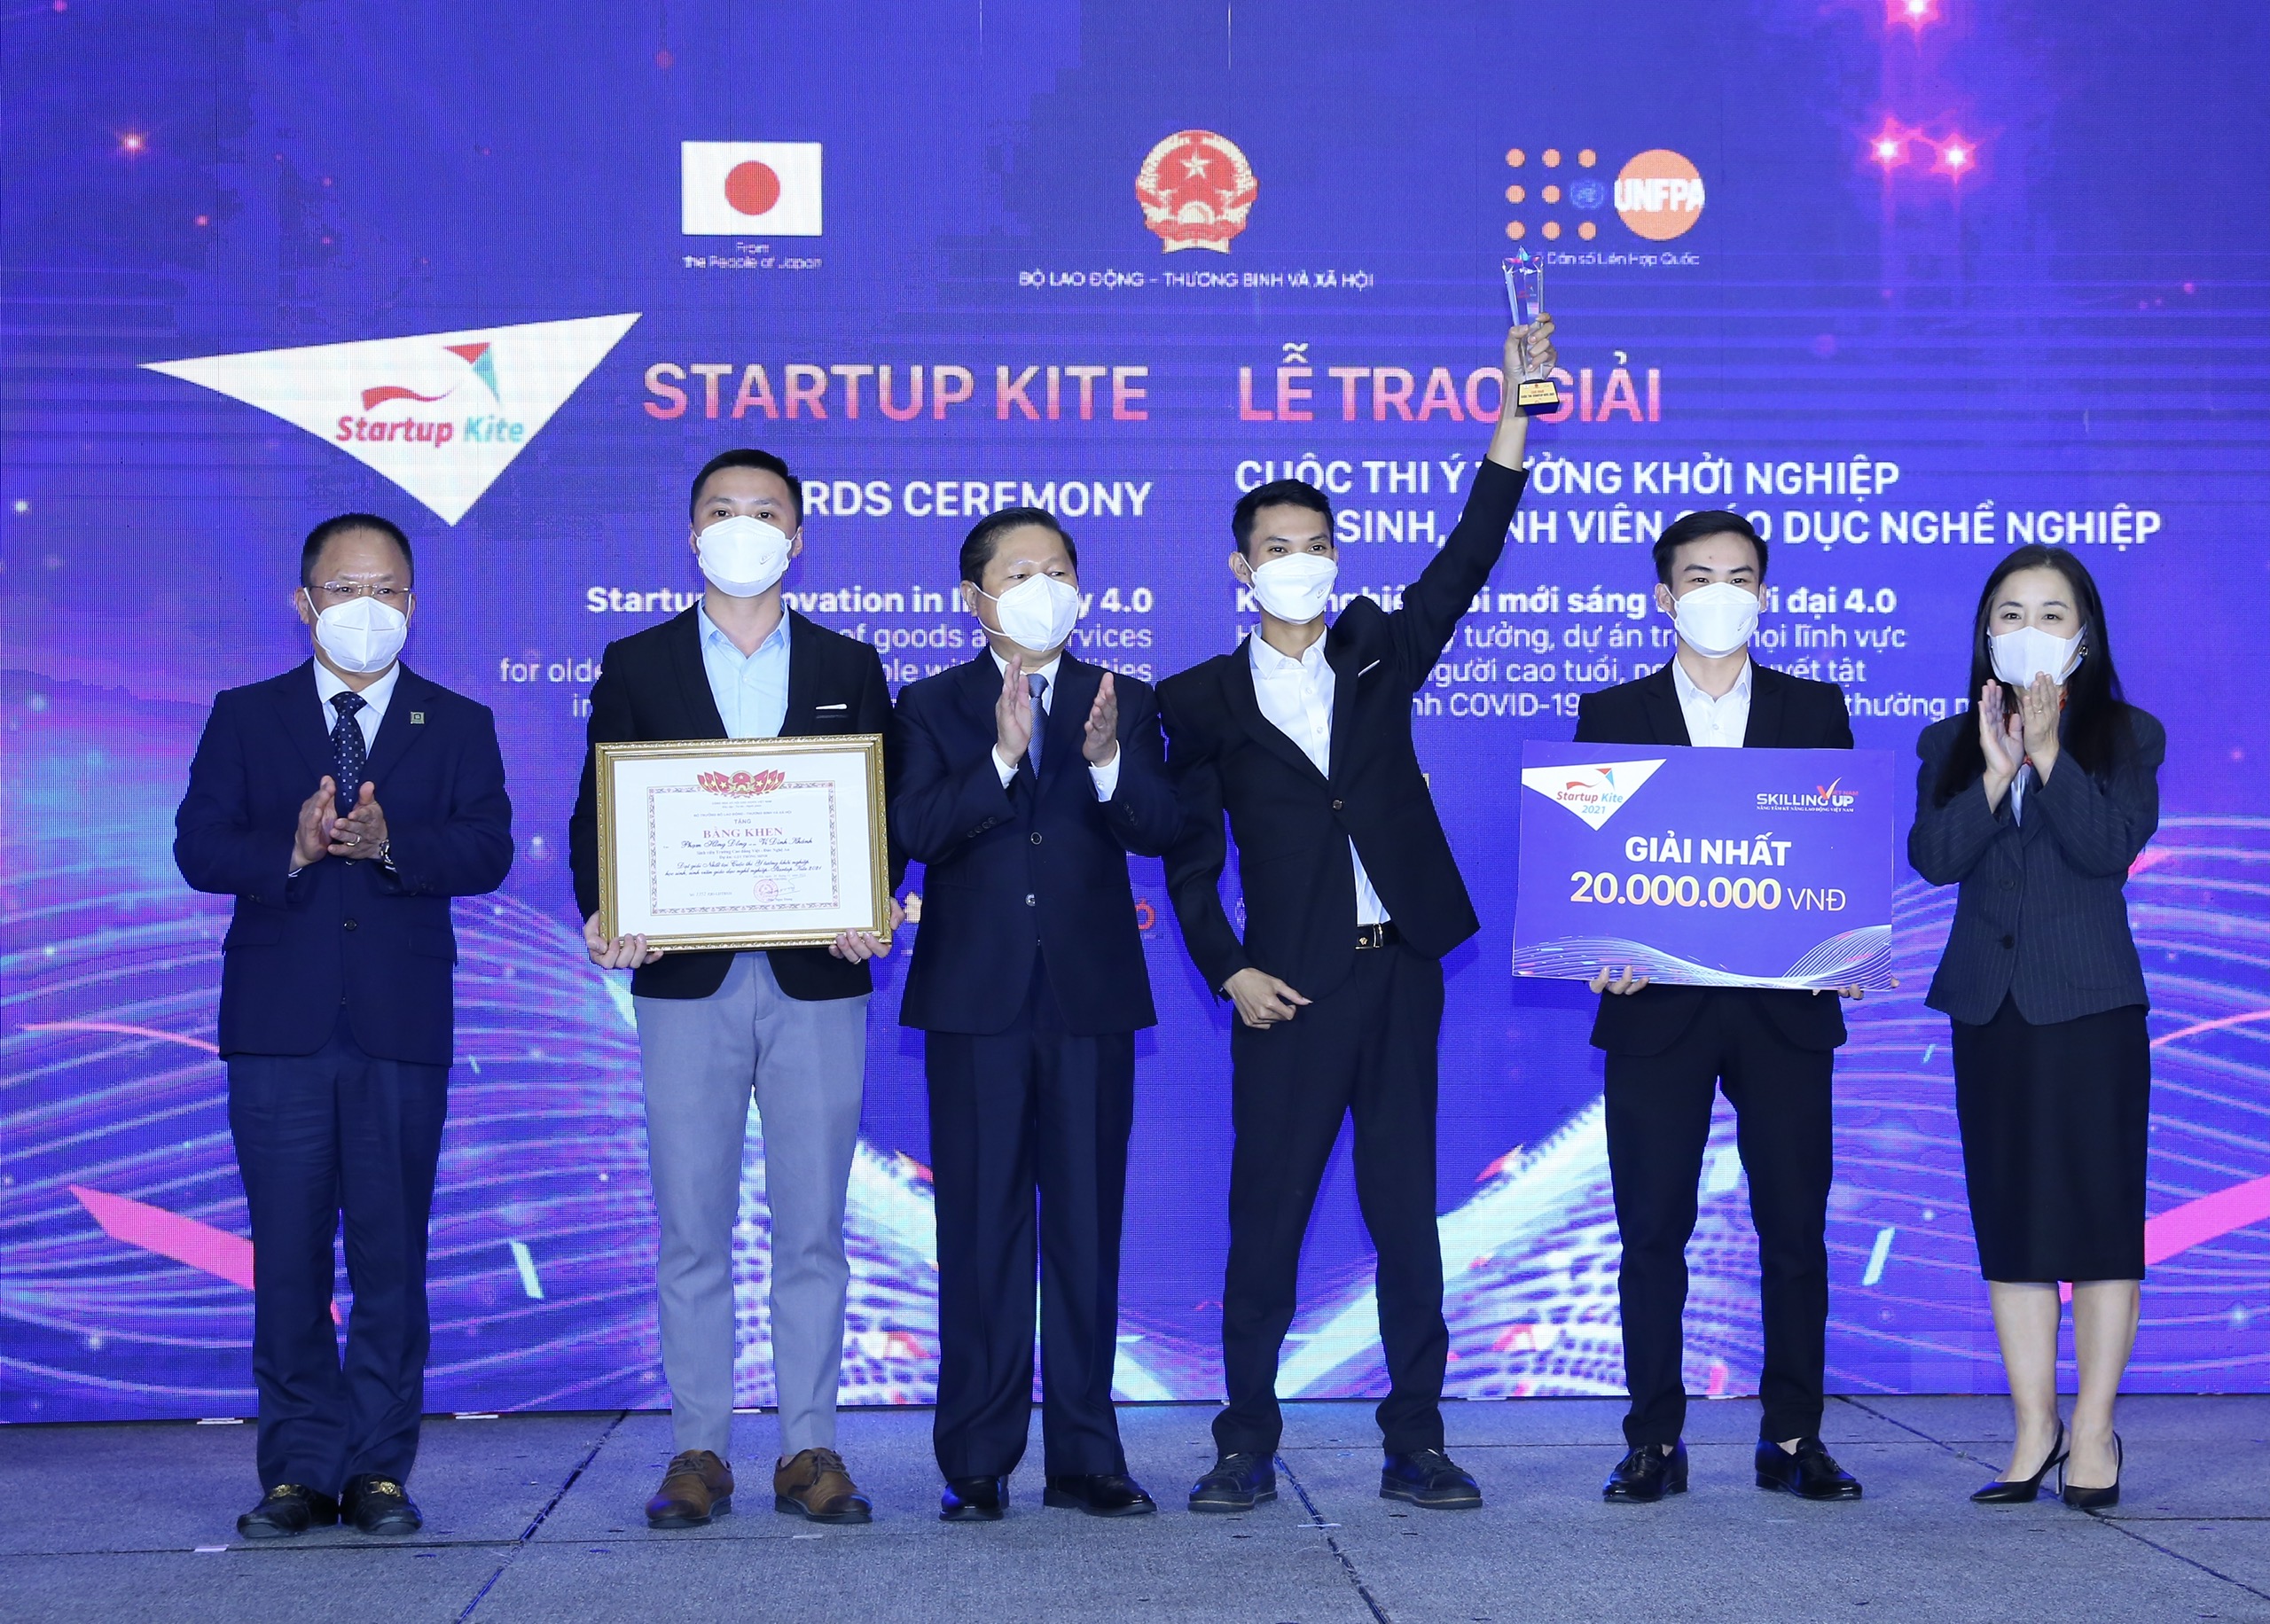 Trường Cao đẳng Việt - Đức Nghệ An với dự án “Gậy thông minh” xuất sắc đoạt giải Nhất cuộc thi Startup Kite 2021